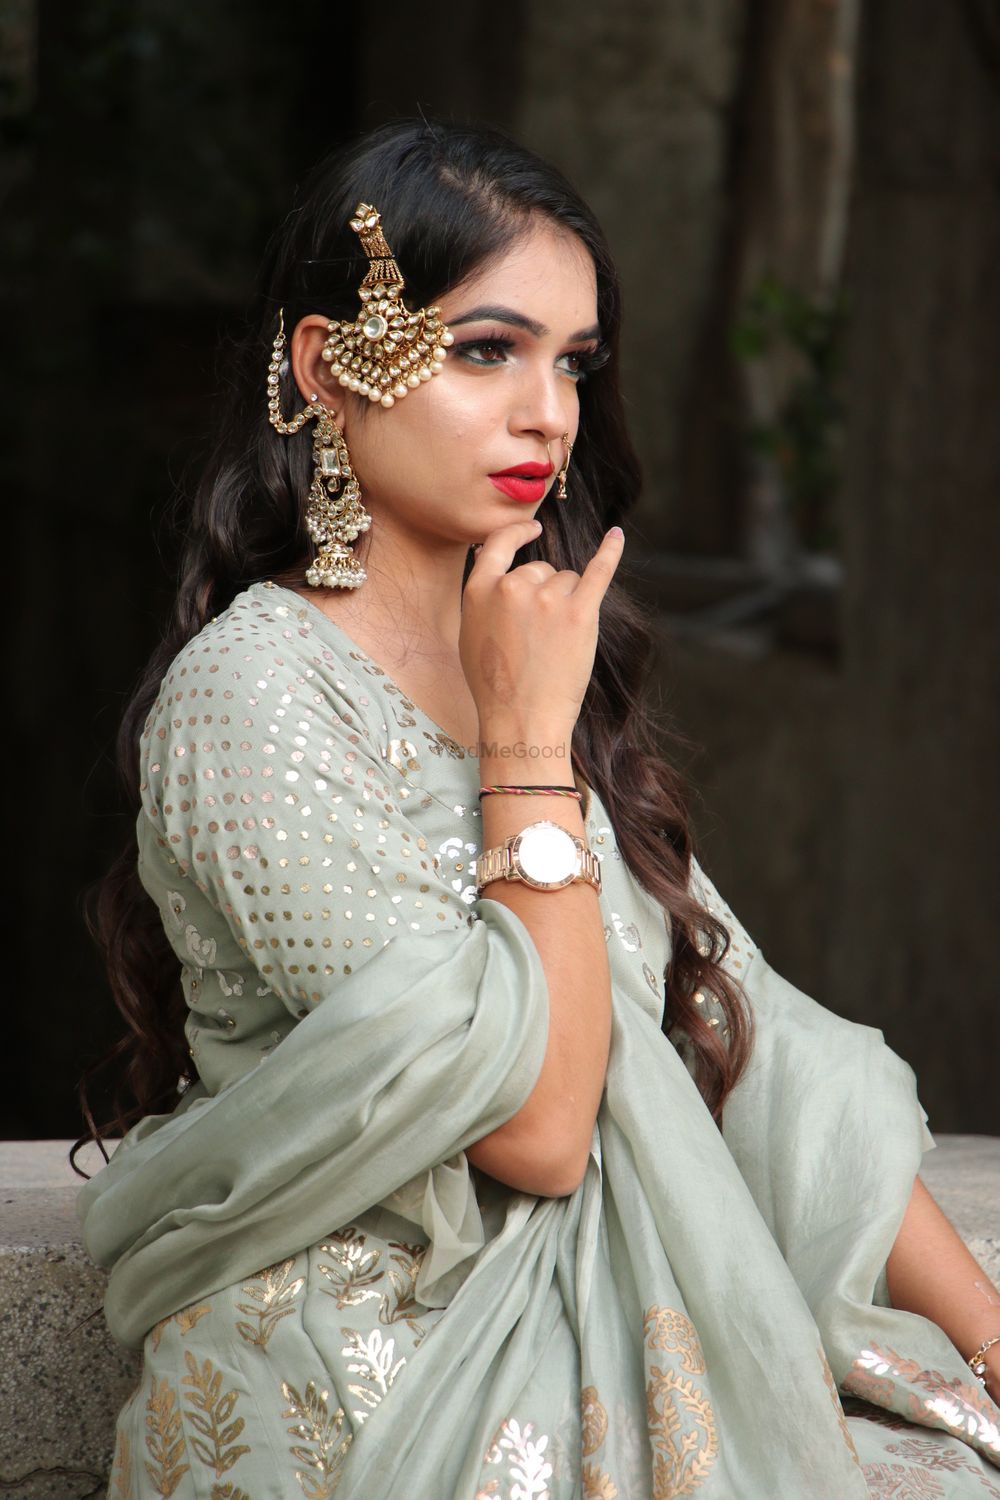 Photo By Makeup by Simran Ahuja - Bridal Makeup